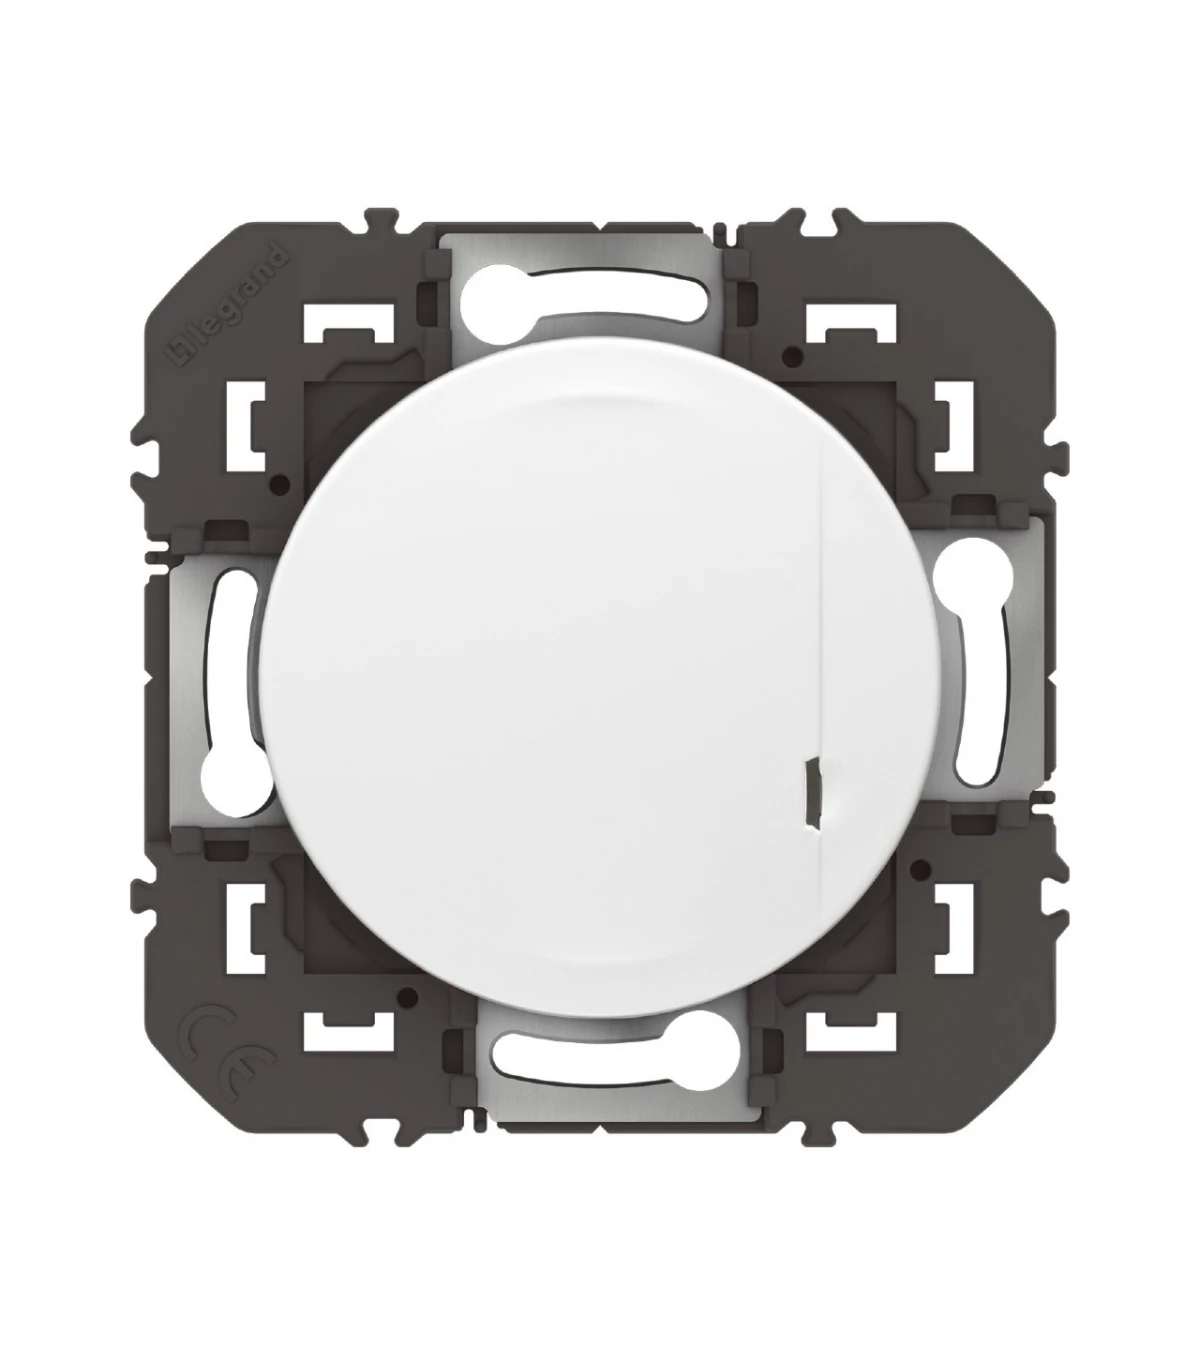 Interrupteur à option variateur à câbler pour installation connectée dooxie  with Netatmo avec plaque blanche - particulier